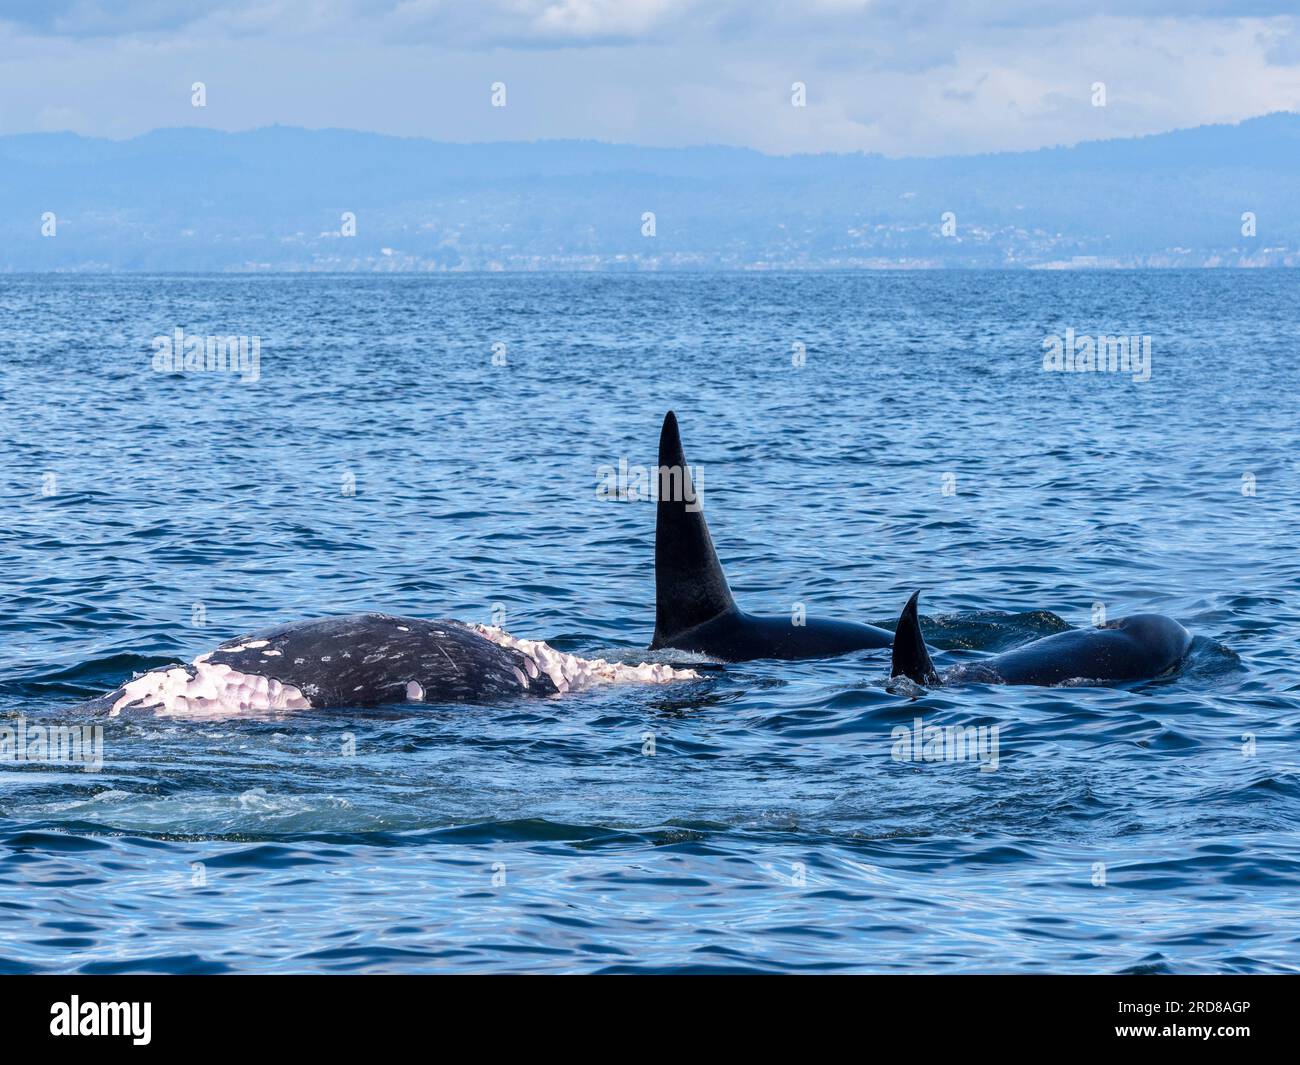 Im Monterey Bay Marine Sanctuary, Kalifornien, USA, gibt es eine Gruppe von transienten Killerwalen (Orcinus orca), die sich von einem grauen Kalbkörper ernähren Stockfoto